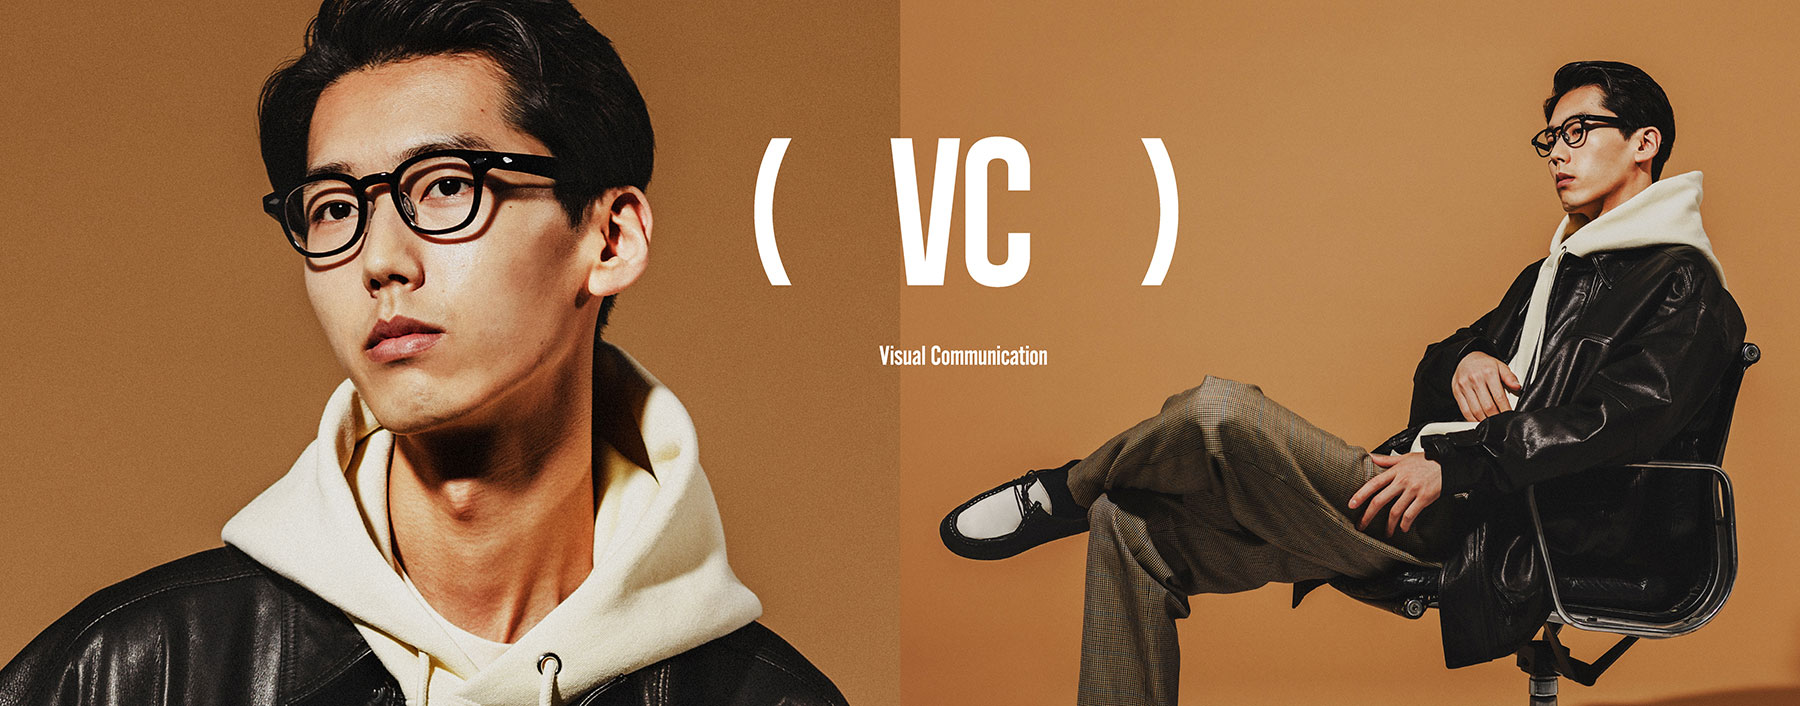 VC = Visual Communication